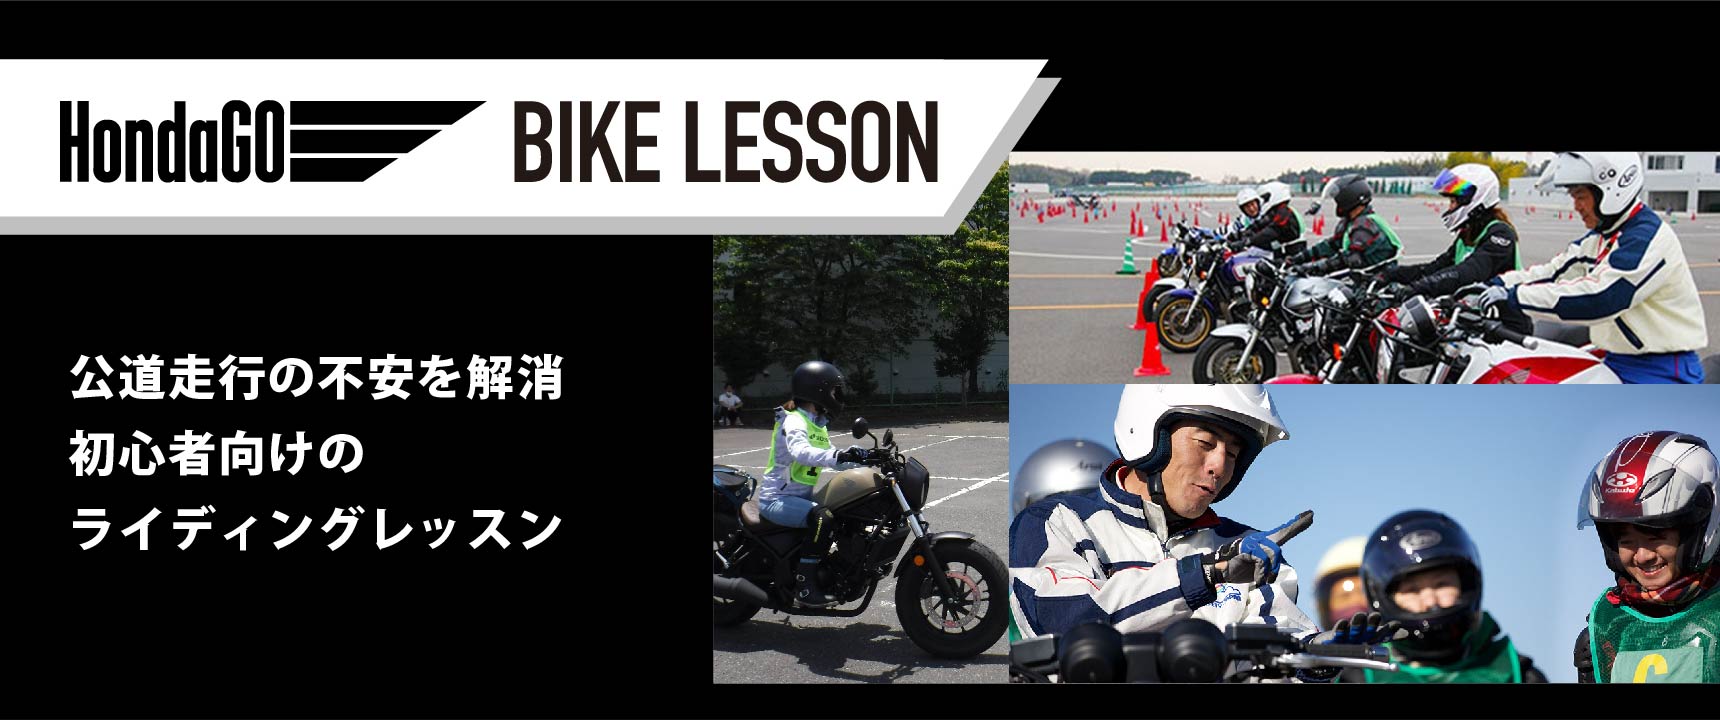 HondaGO BIKE LESSON　埼玉会場